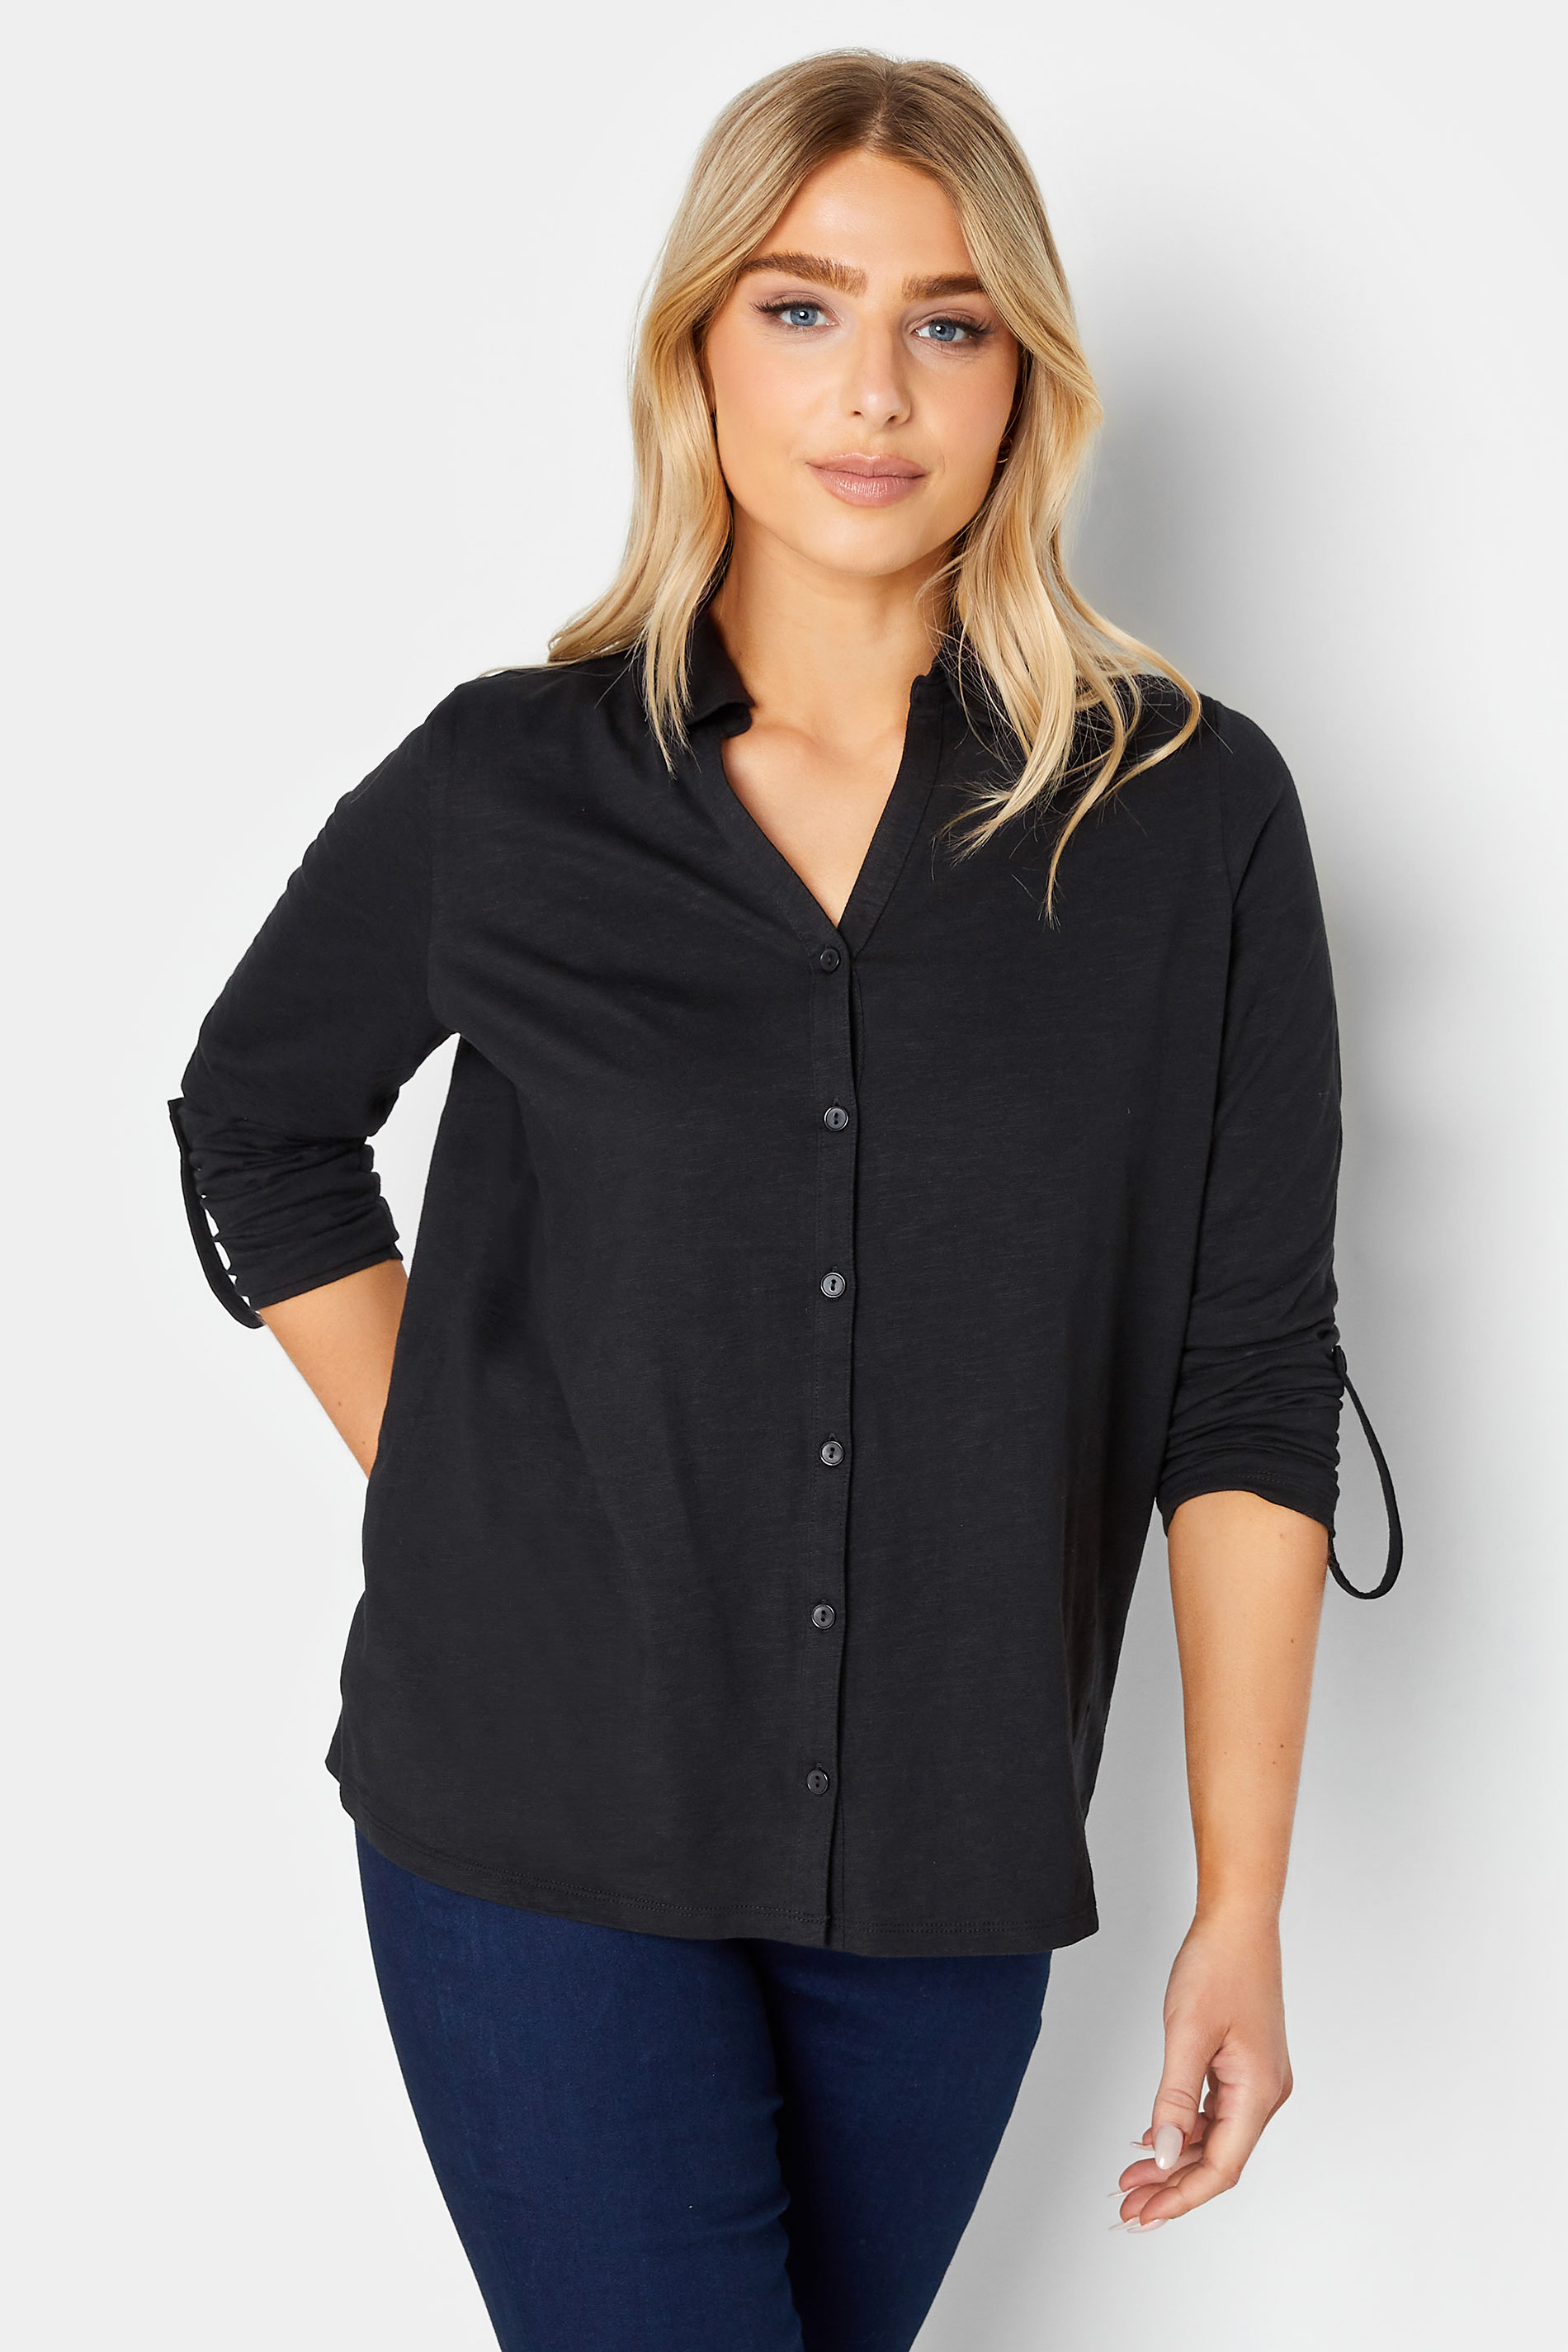 M&Co Black Cotton Shirt | M&Co 1